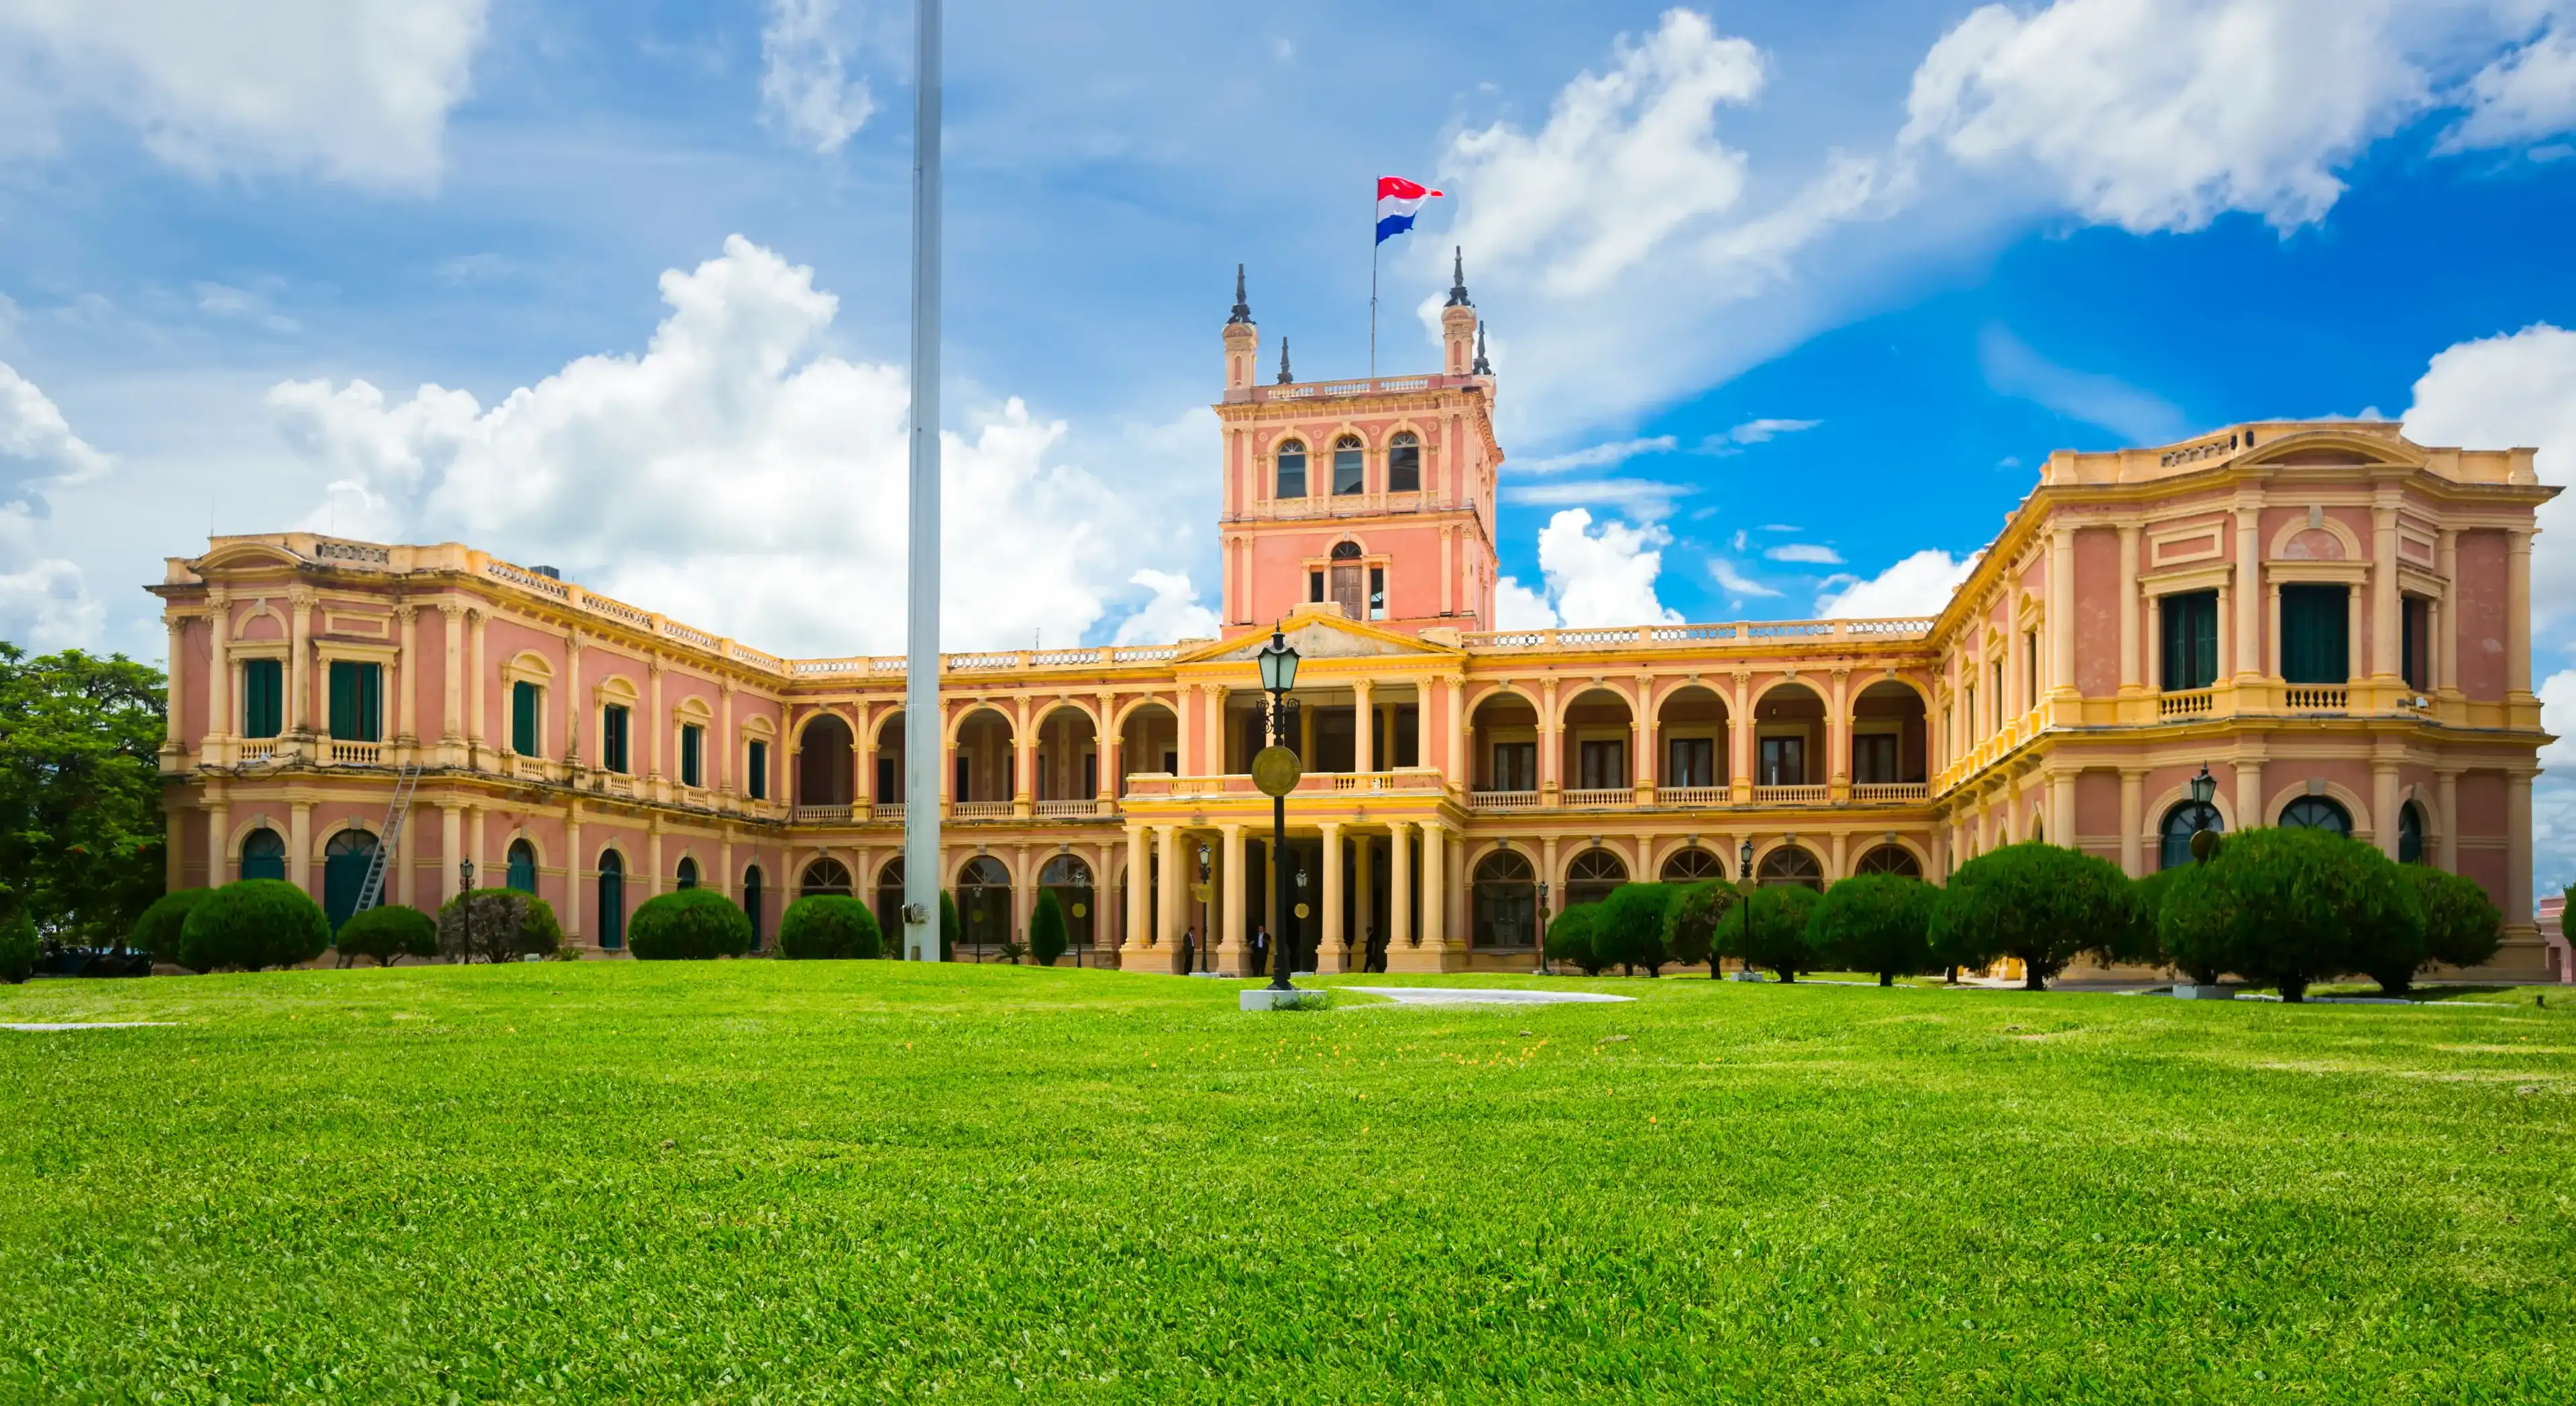 Historical presidential and governmental Palacio de los Lopez in Asuncion